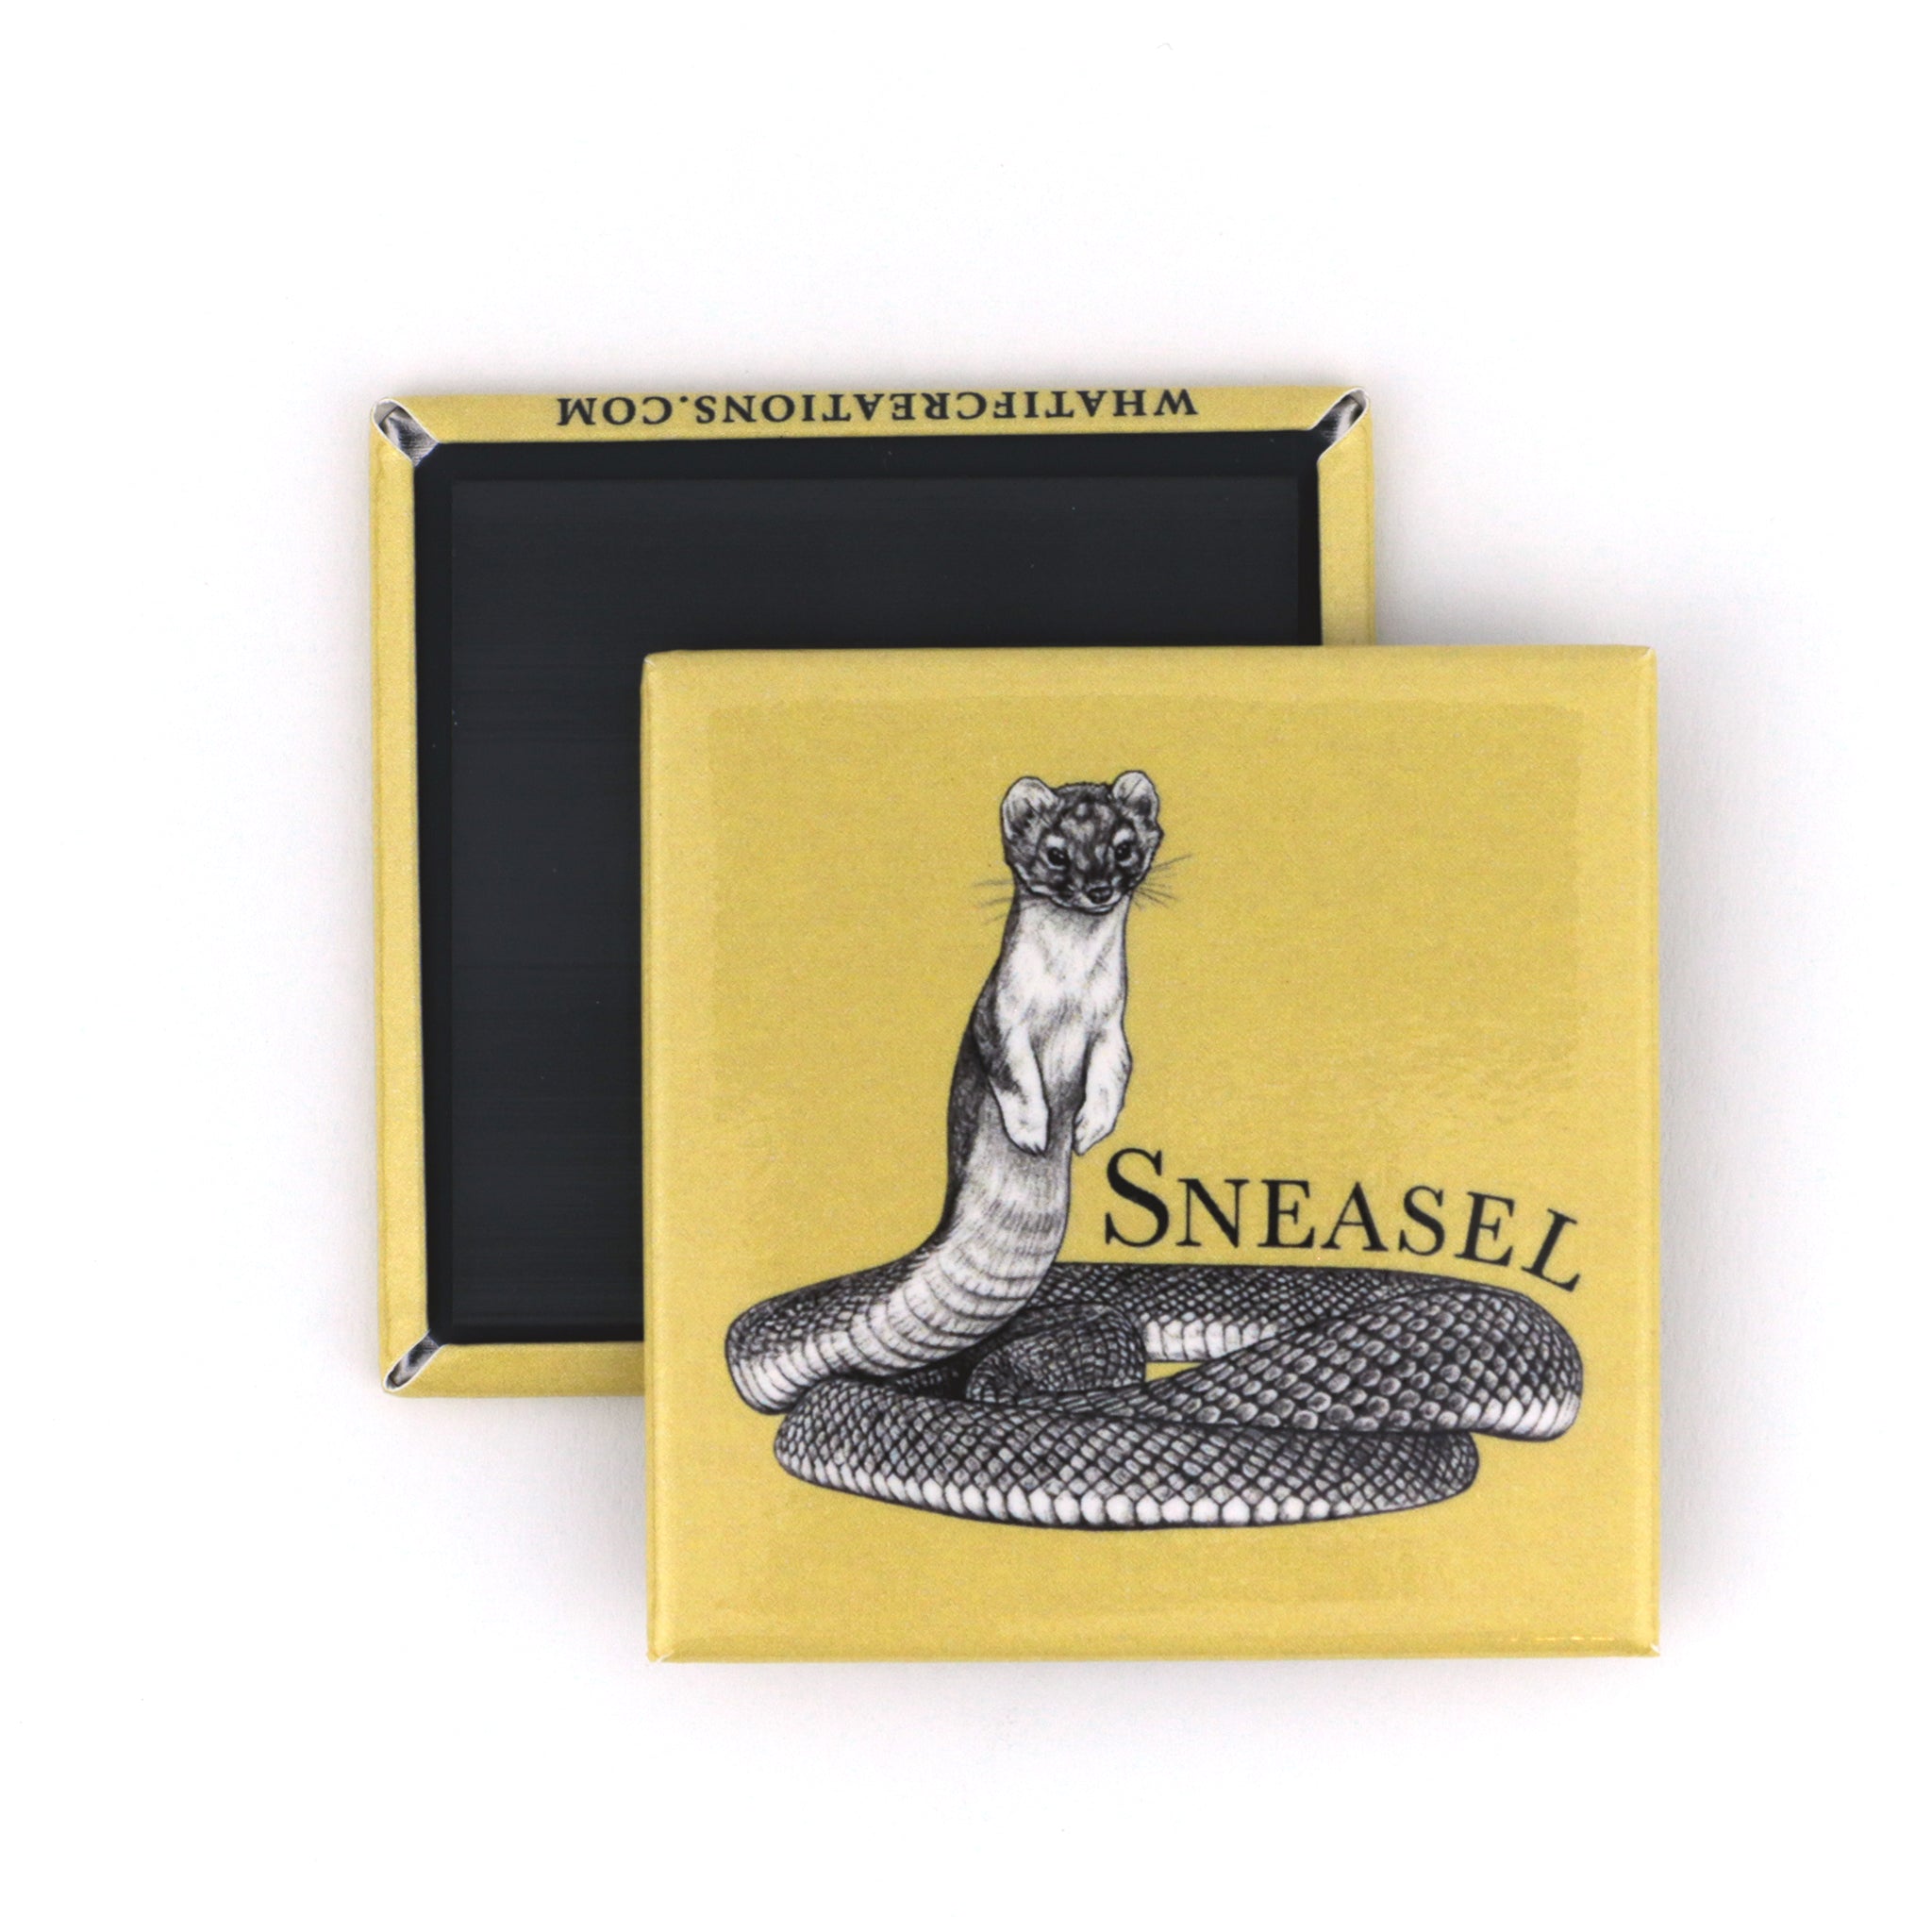 Sneasel | Snake + Weasel Hybrid Animal | 2" Fridge Magnet